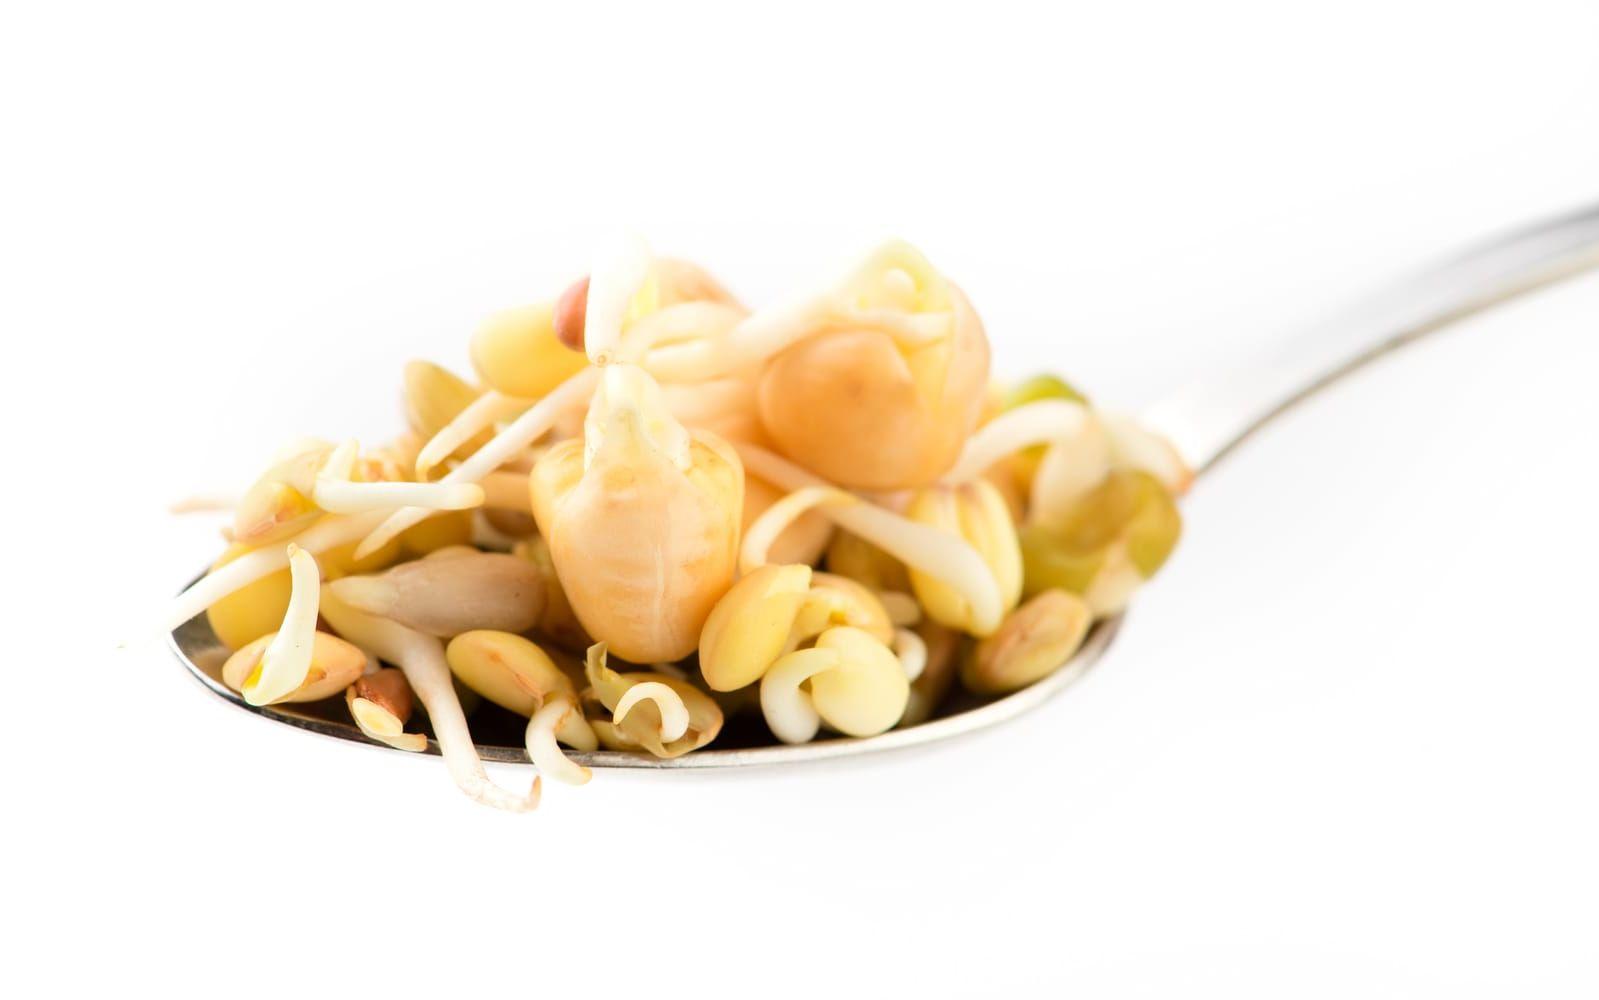 Groddar kan användas i stället för pasta eller ris i matlagningen. Foto: Tanya Sid/Shutterstock.com